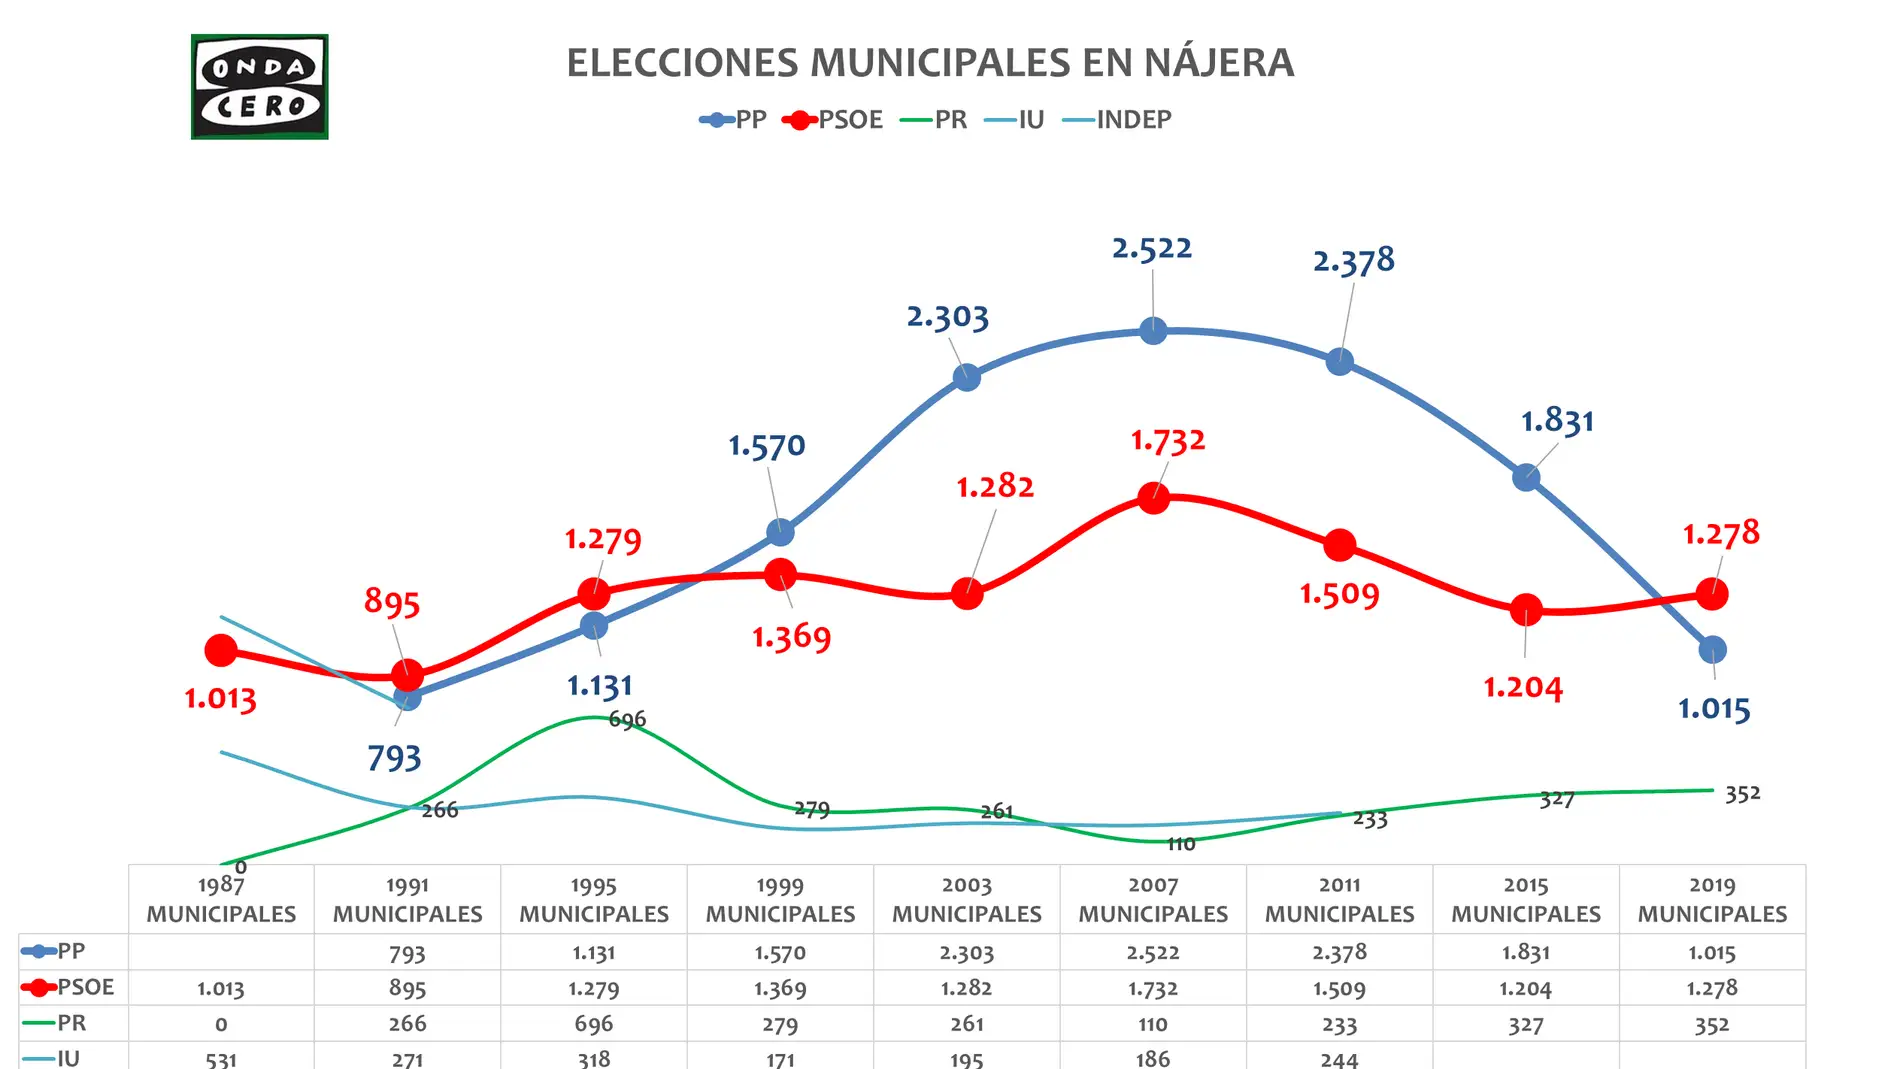 Abierto escenario electoral en Nájera